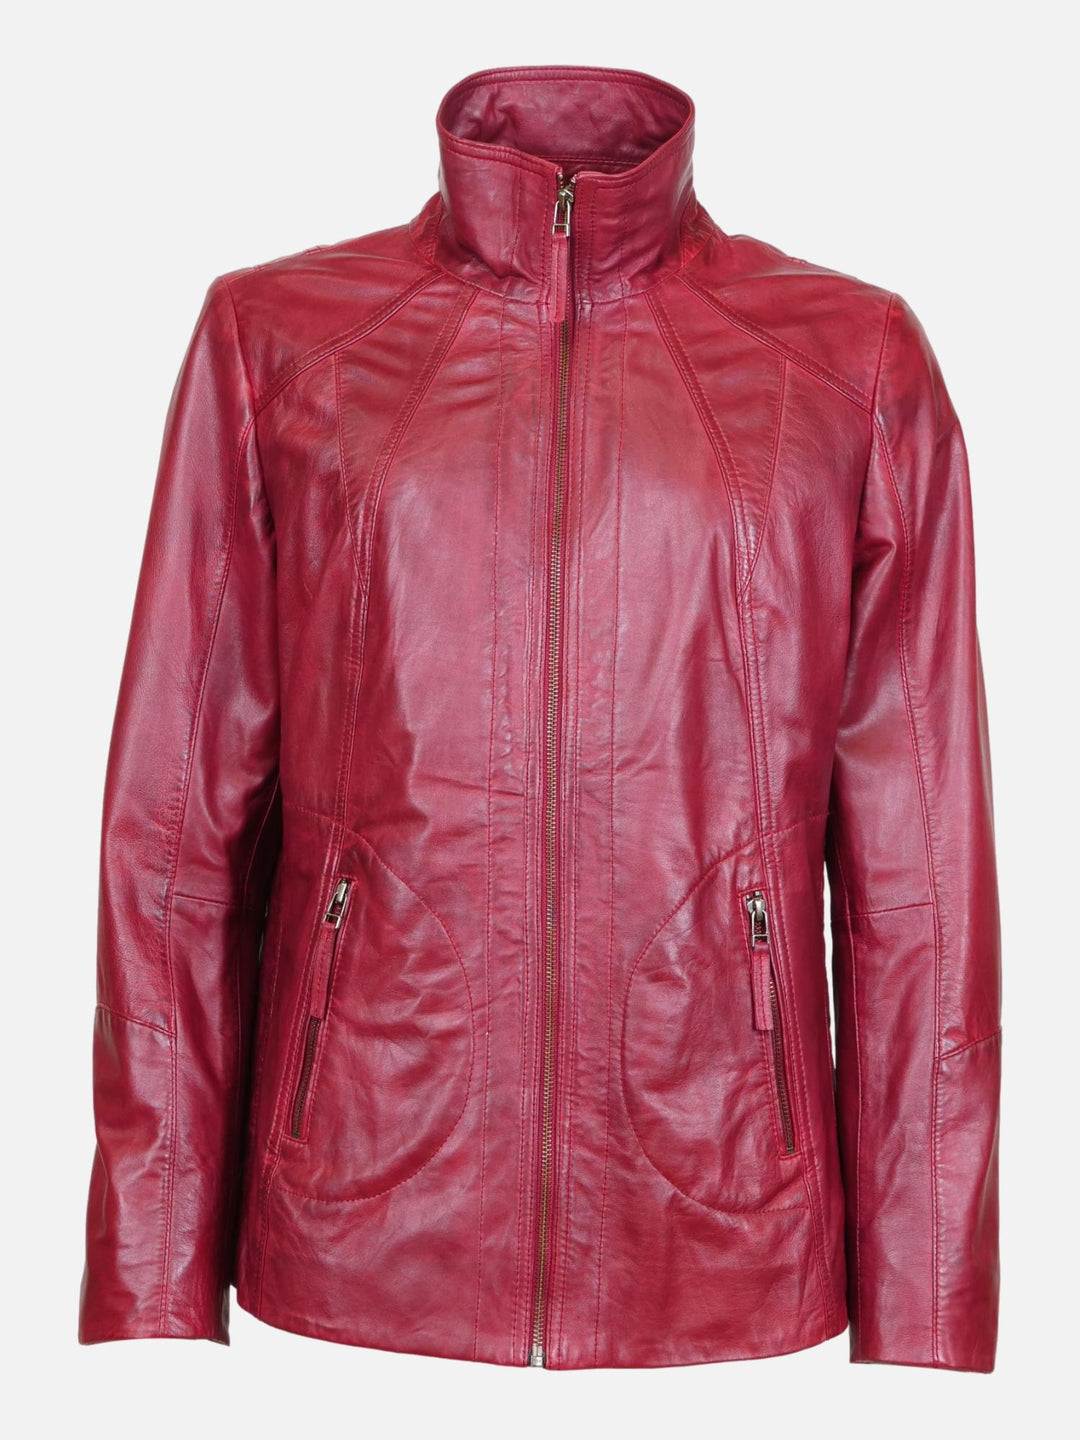 Iden - Lamb Boss Leather - Jacket - Women - Red